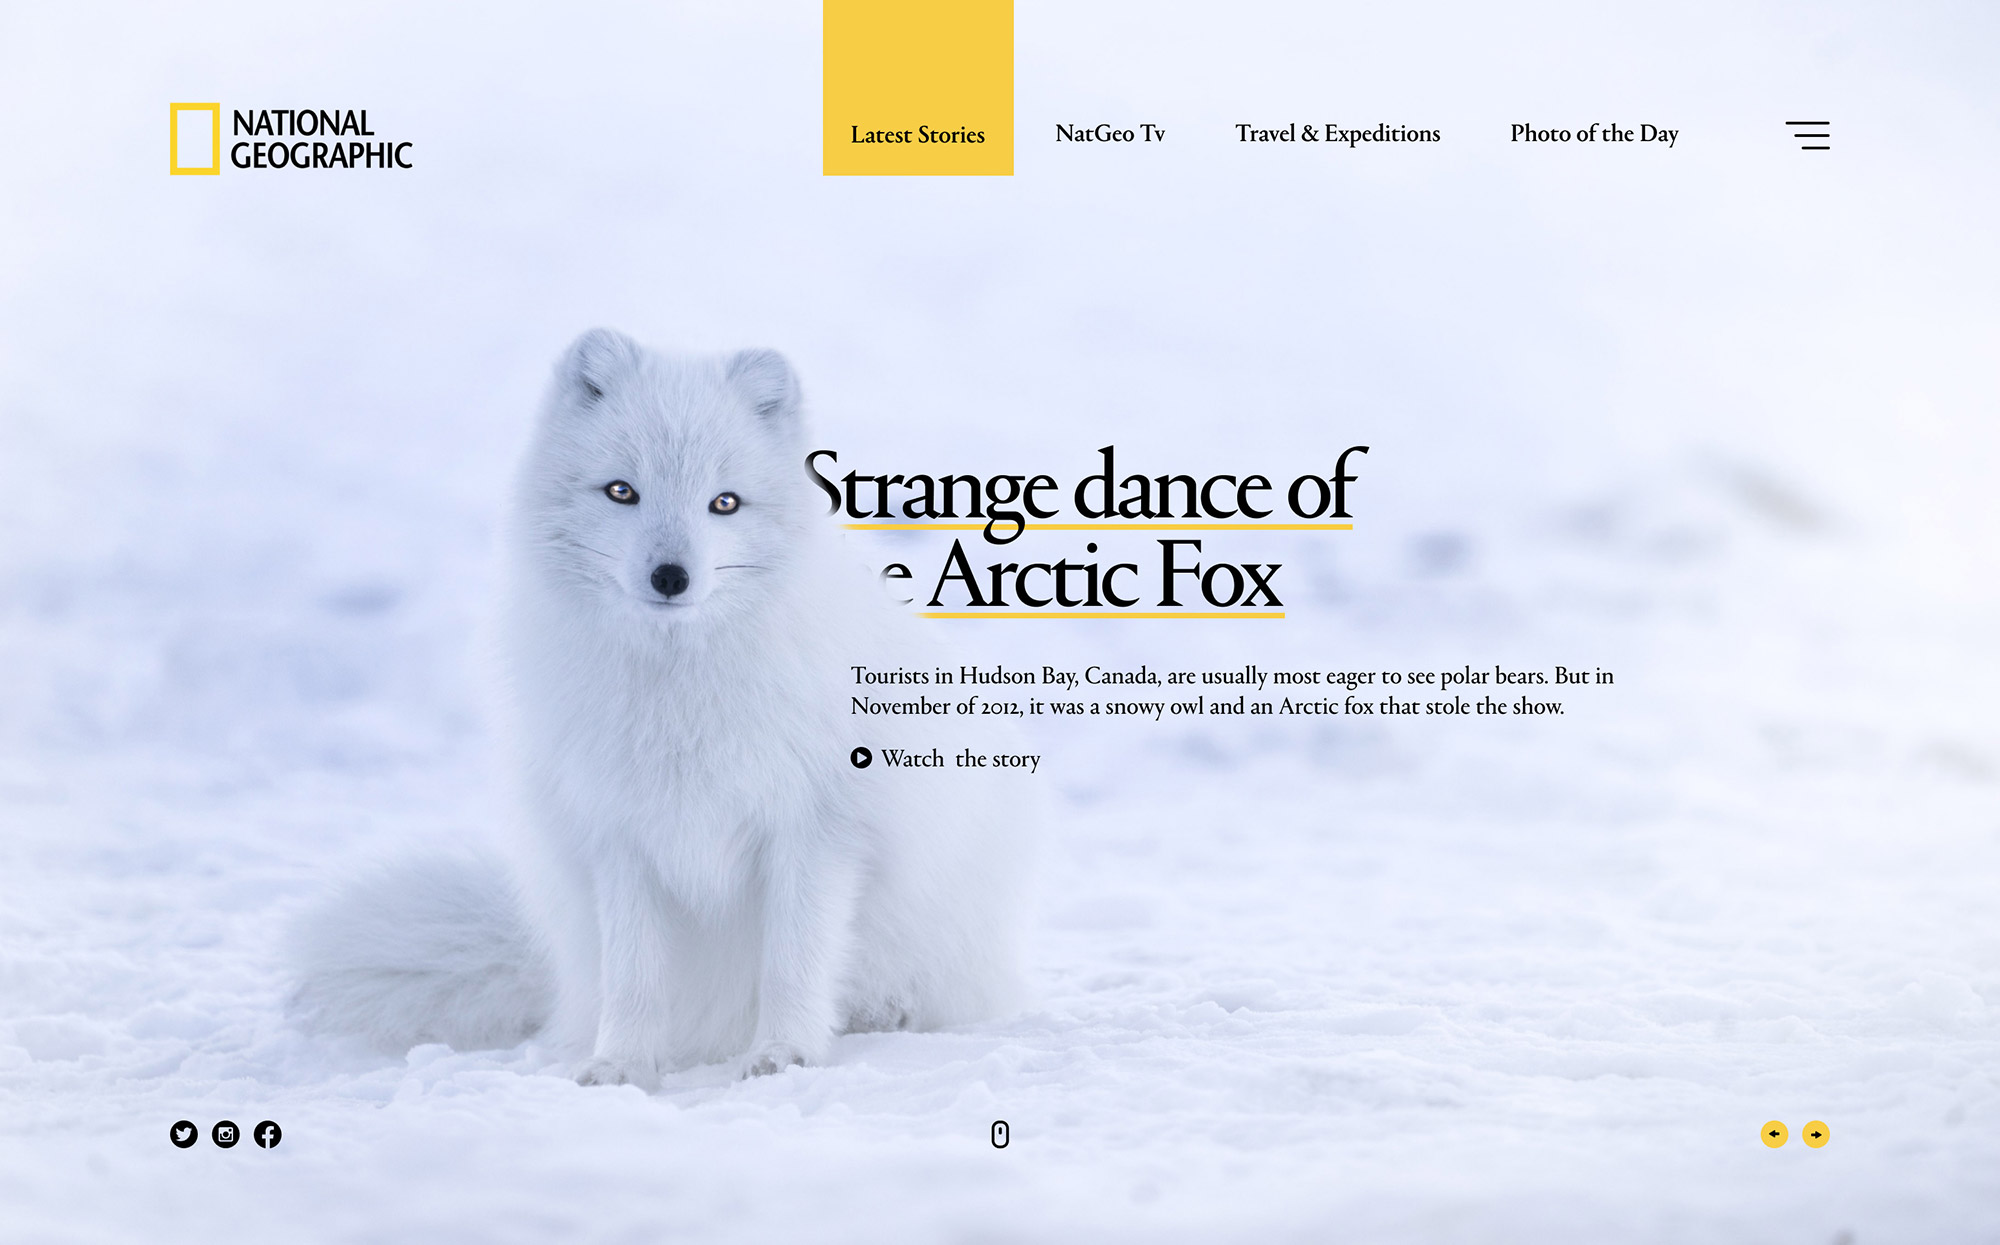 Strange dance of the arctic fox